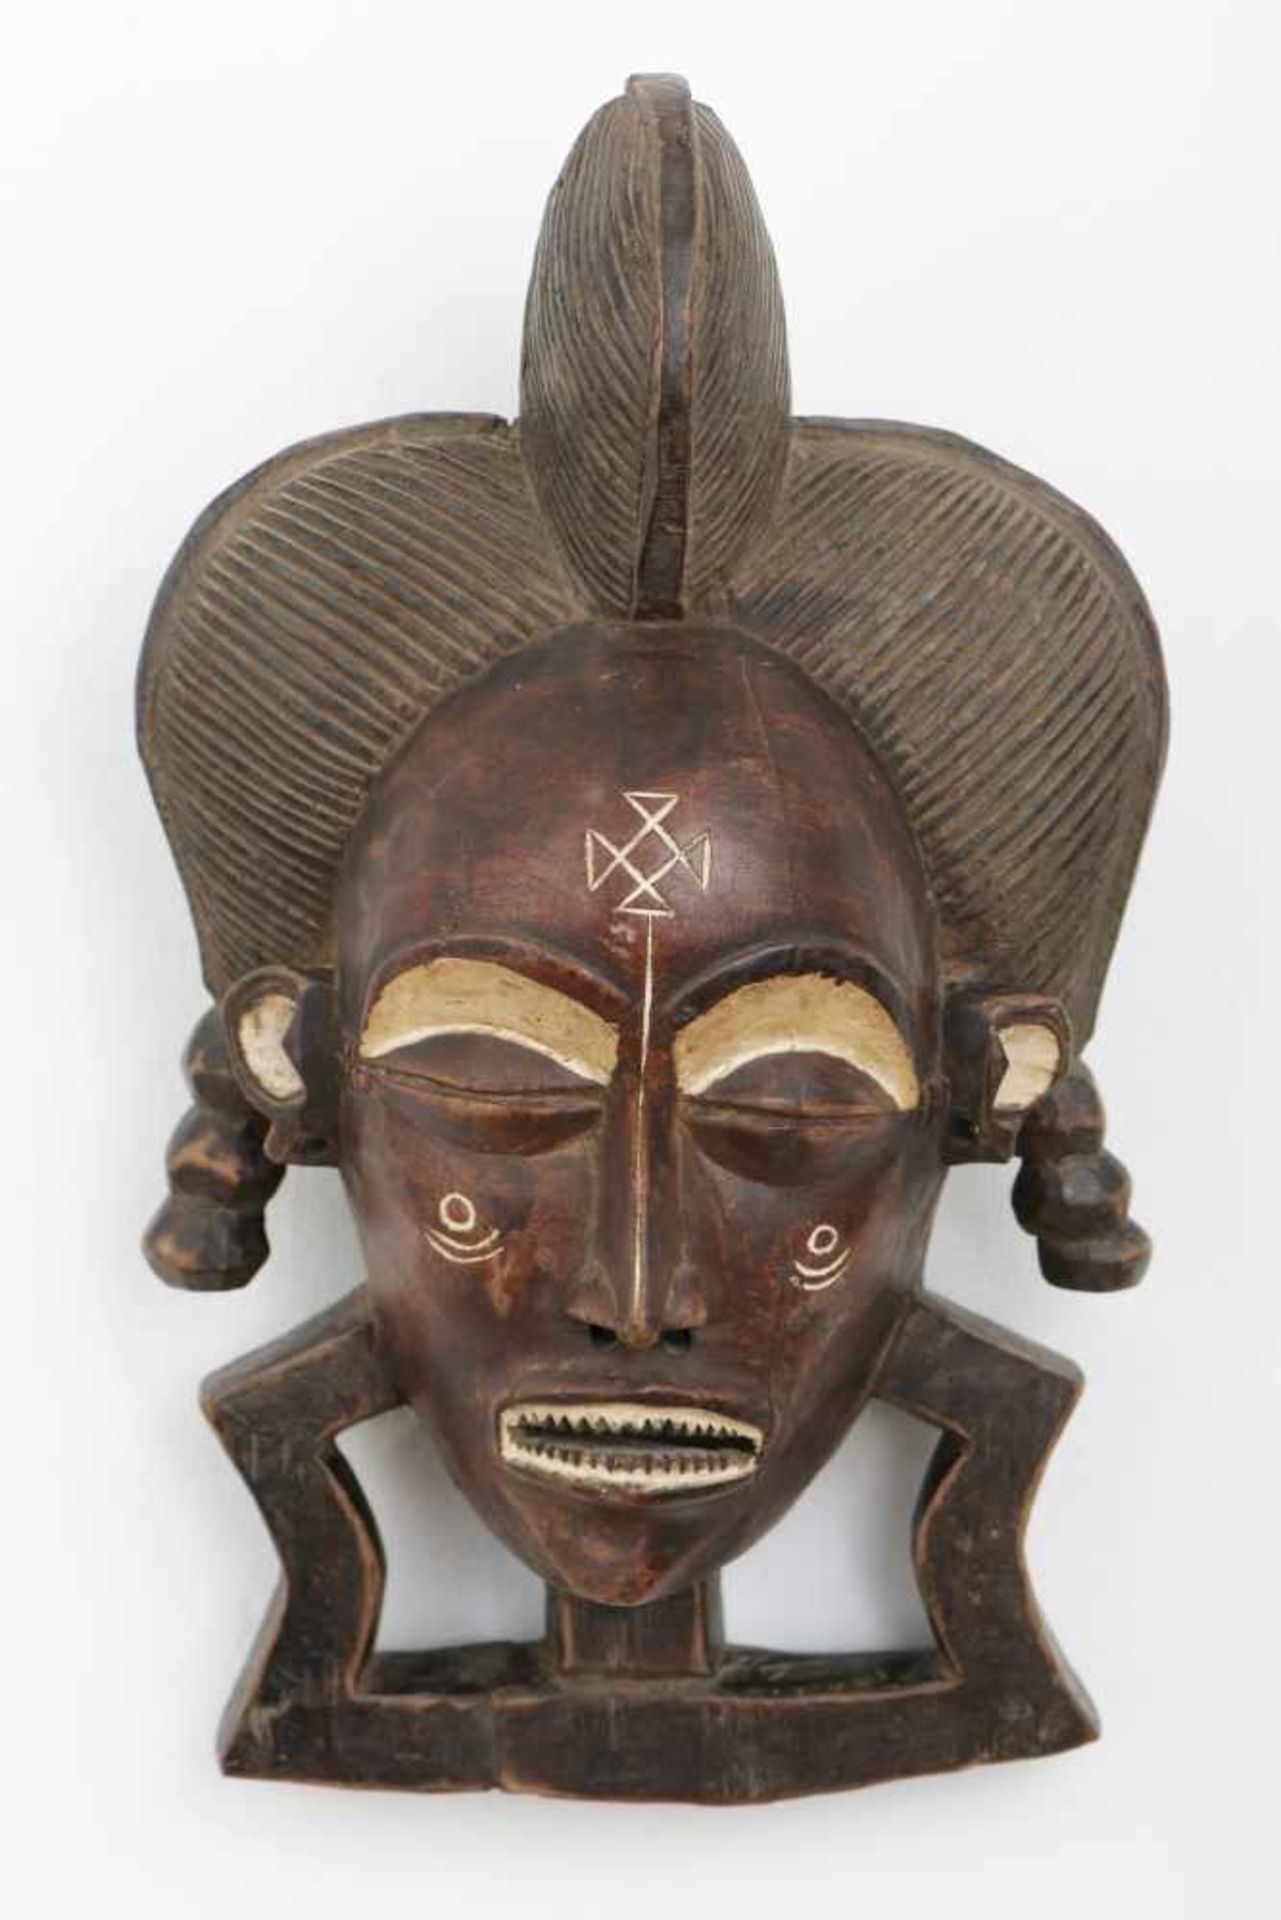 Afrikanische Tanzmaske der Chokwe, AngolaHolz, geschnitzt und dunkel patiniert, weibliches Gesicht